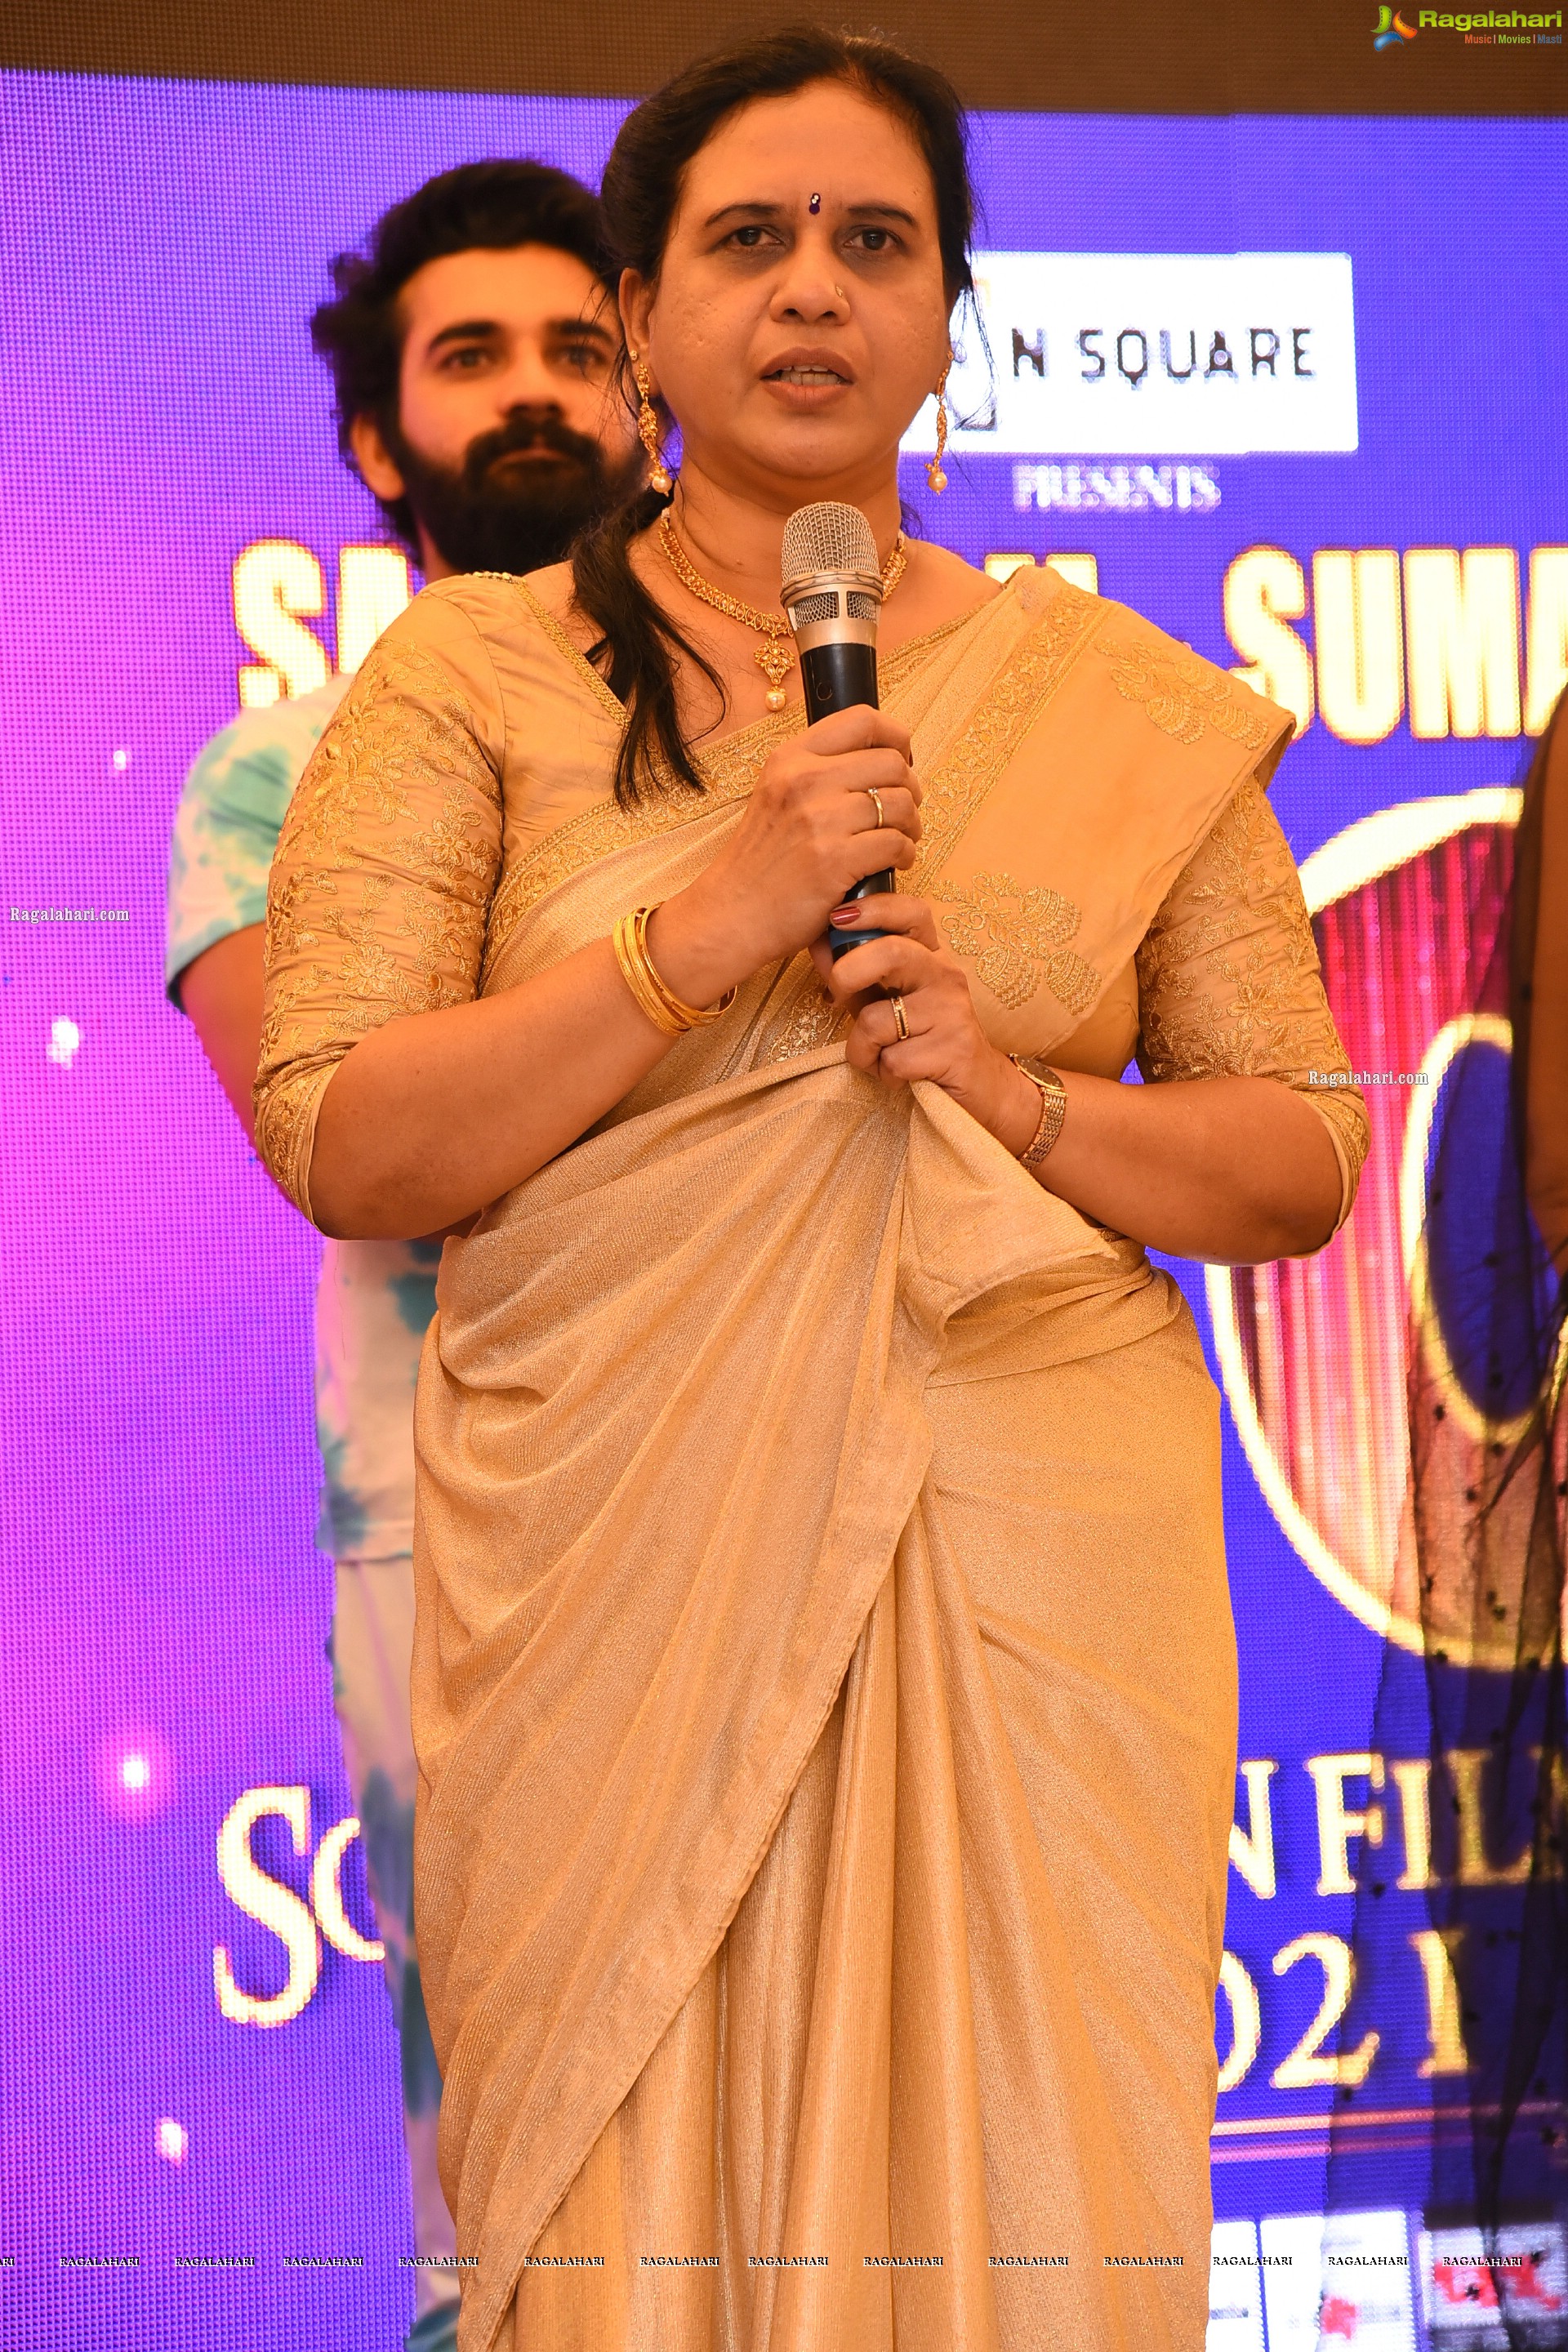 Santosham-Suman TV South Indian Film Awards 2021 Curtain Raiser